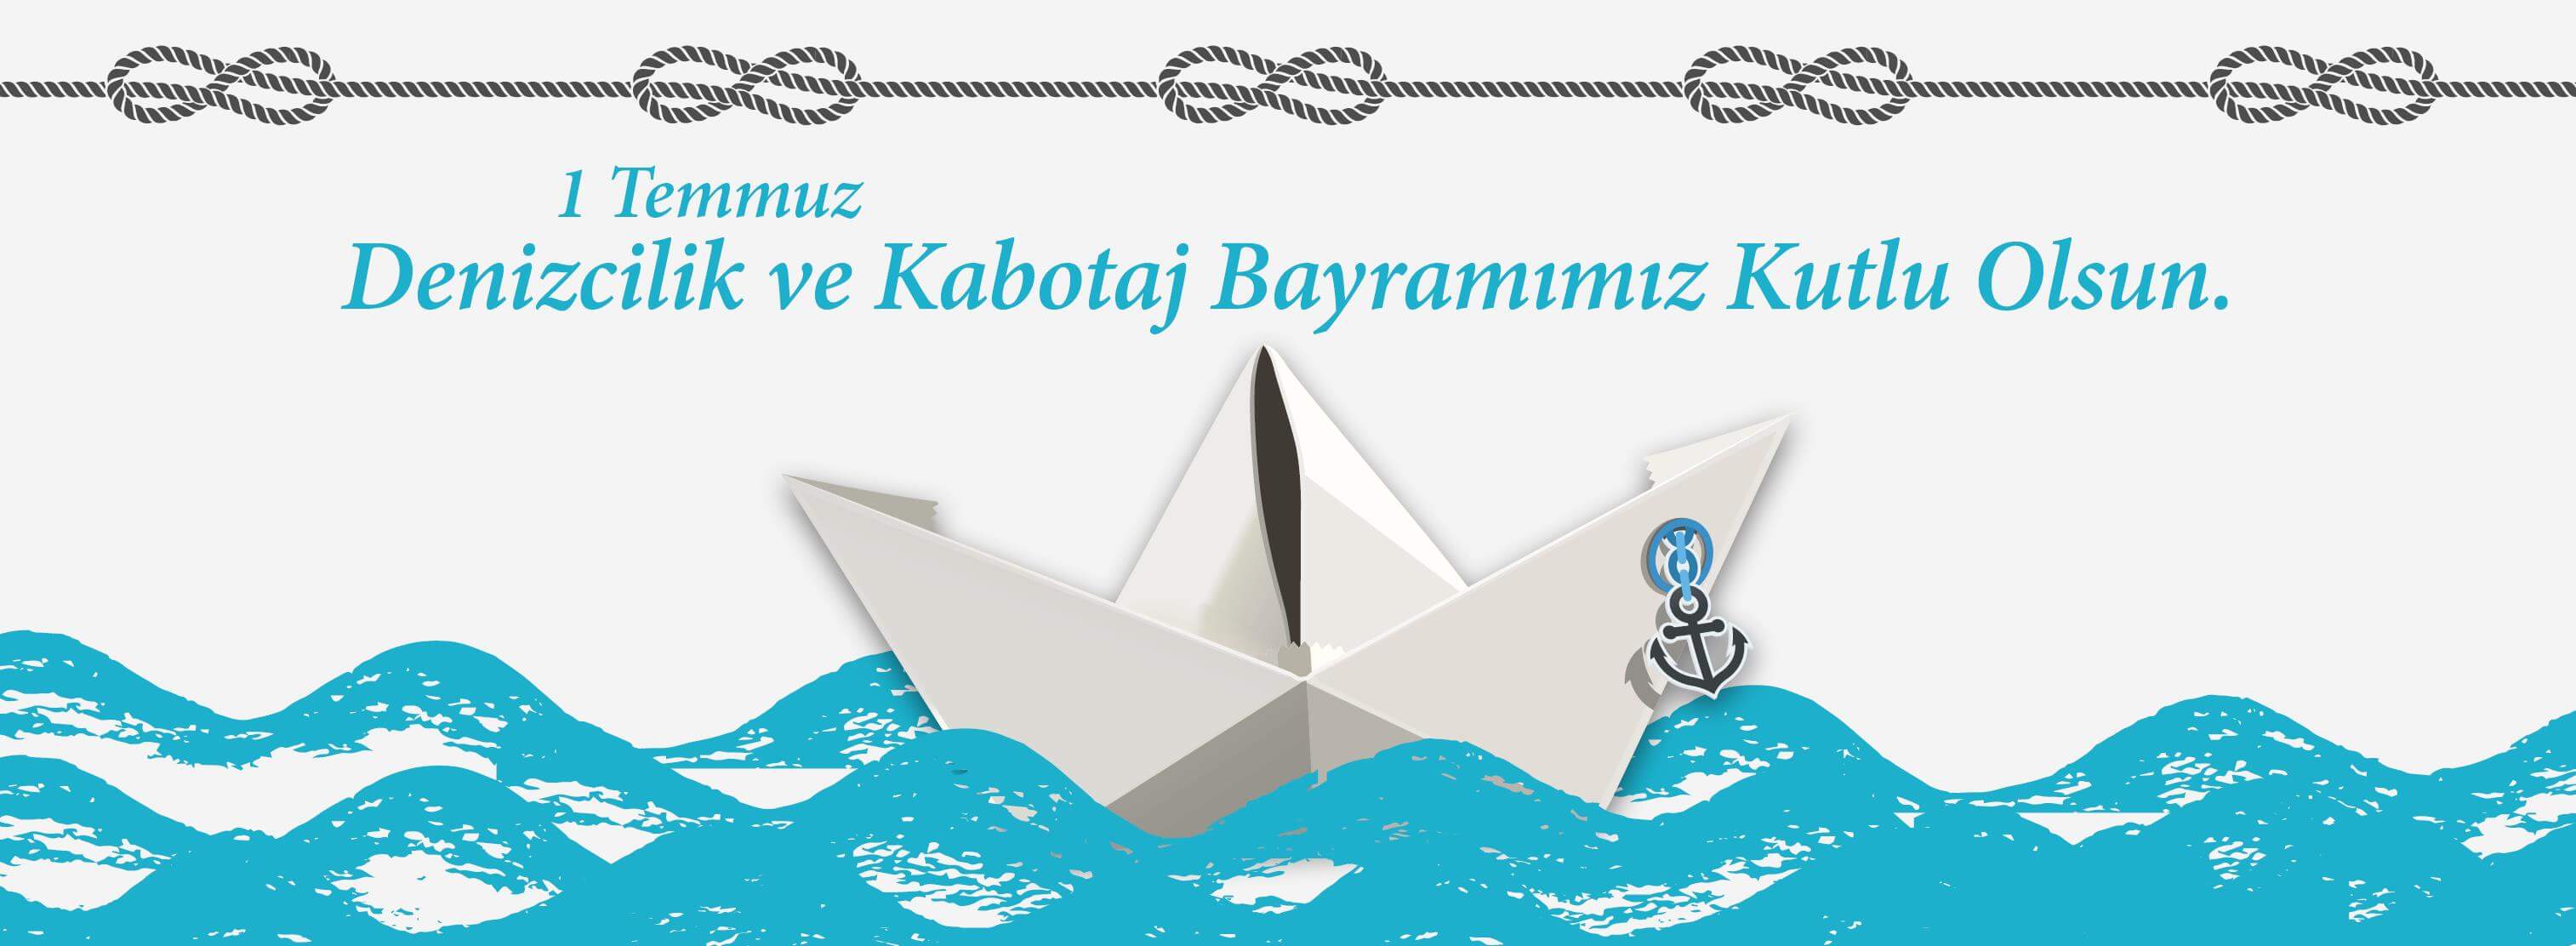 Belediye Başkanı Sayın Ülgür Gökhan'ın 1 Temmuz Denizcilik ve Kabotaj Bayramı Kutlama Mesajı